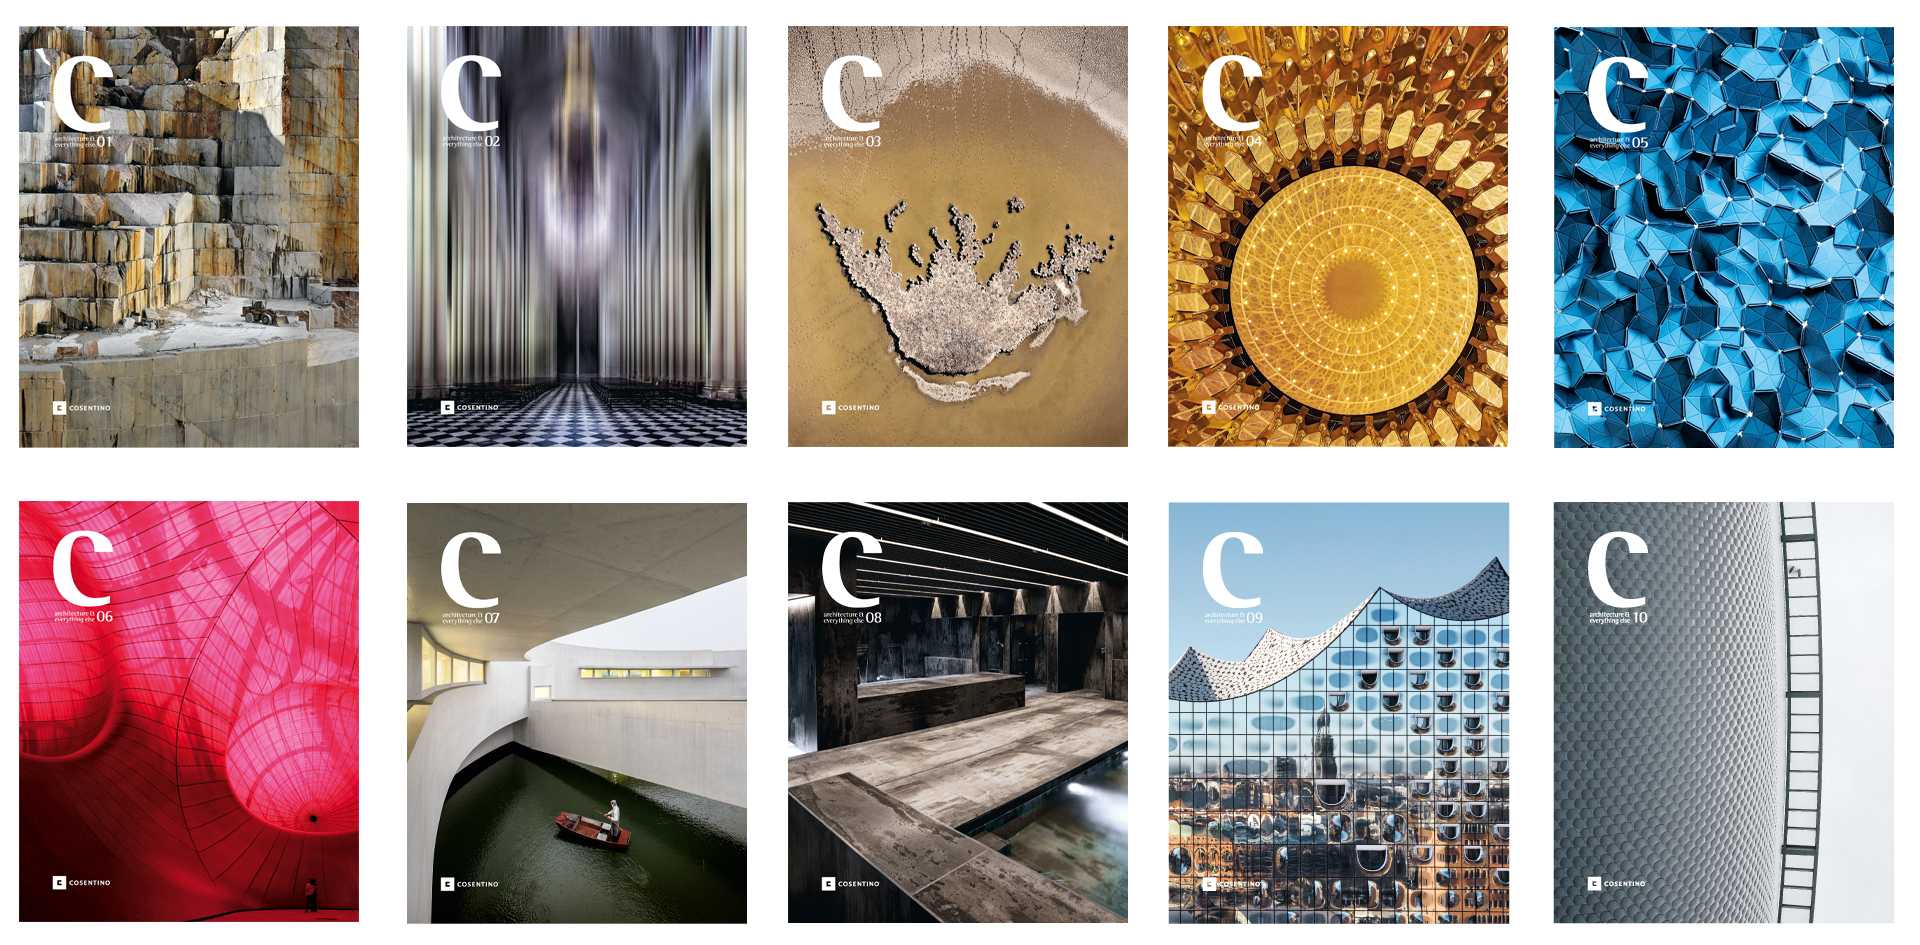 Bildnummer 32 des aktuellen Abschnitts von C Magazine Silver Architect's Darling Award von Cosentino Deutschland